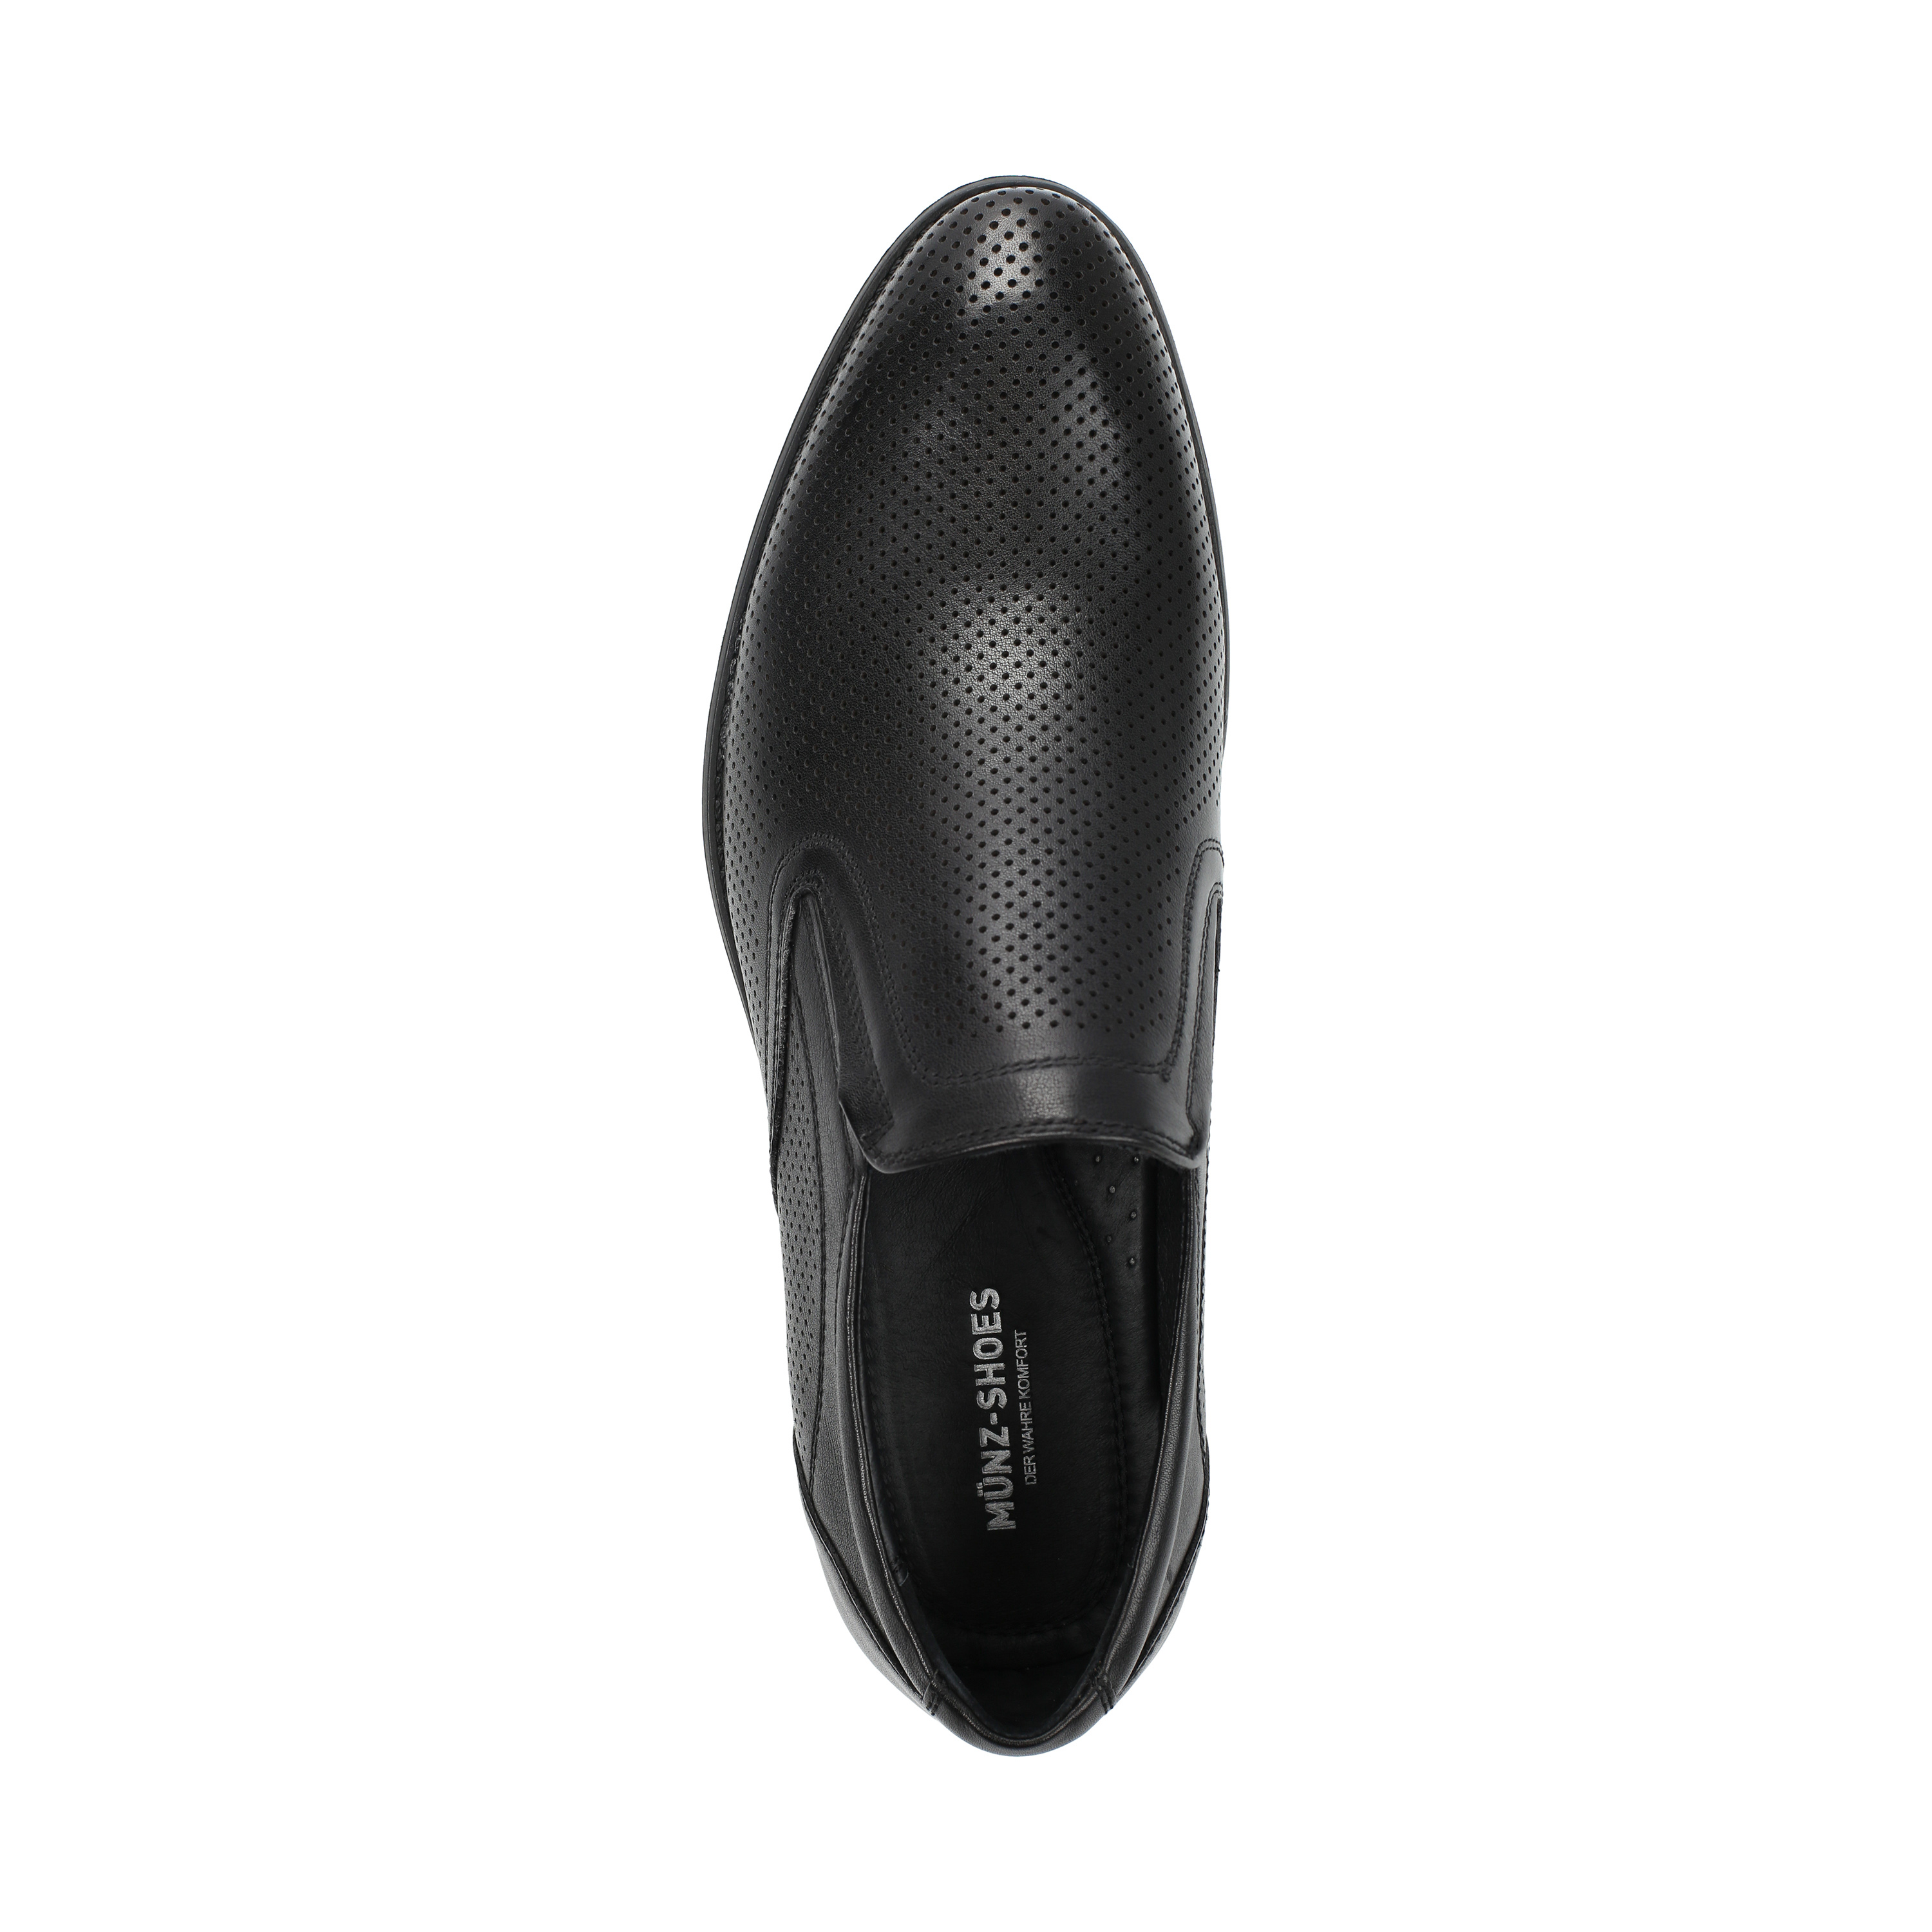 Полуботинки MUNZ Shoes 058-101B-1121 058-101B-1121, цвет черный, размер 40 туфли - фото 5